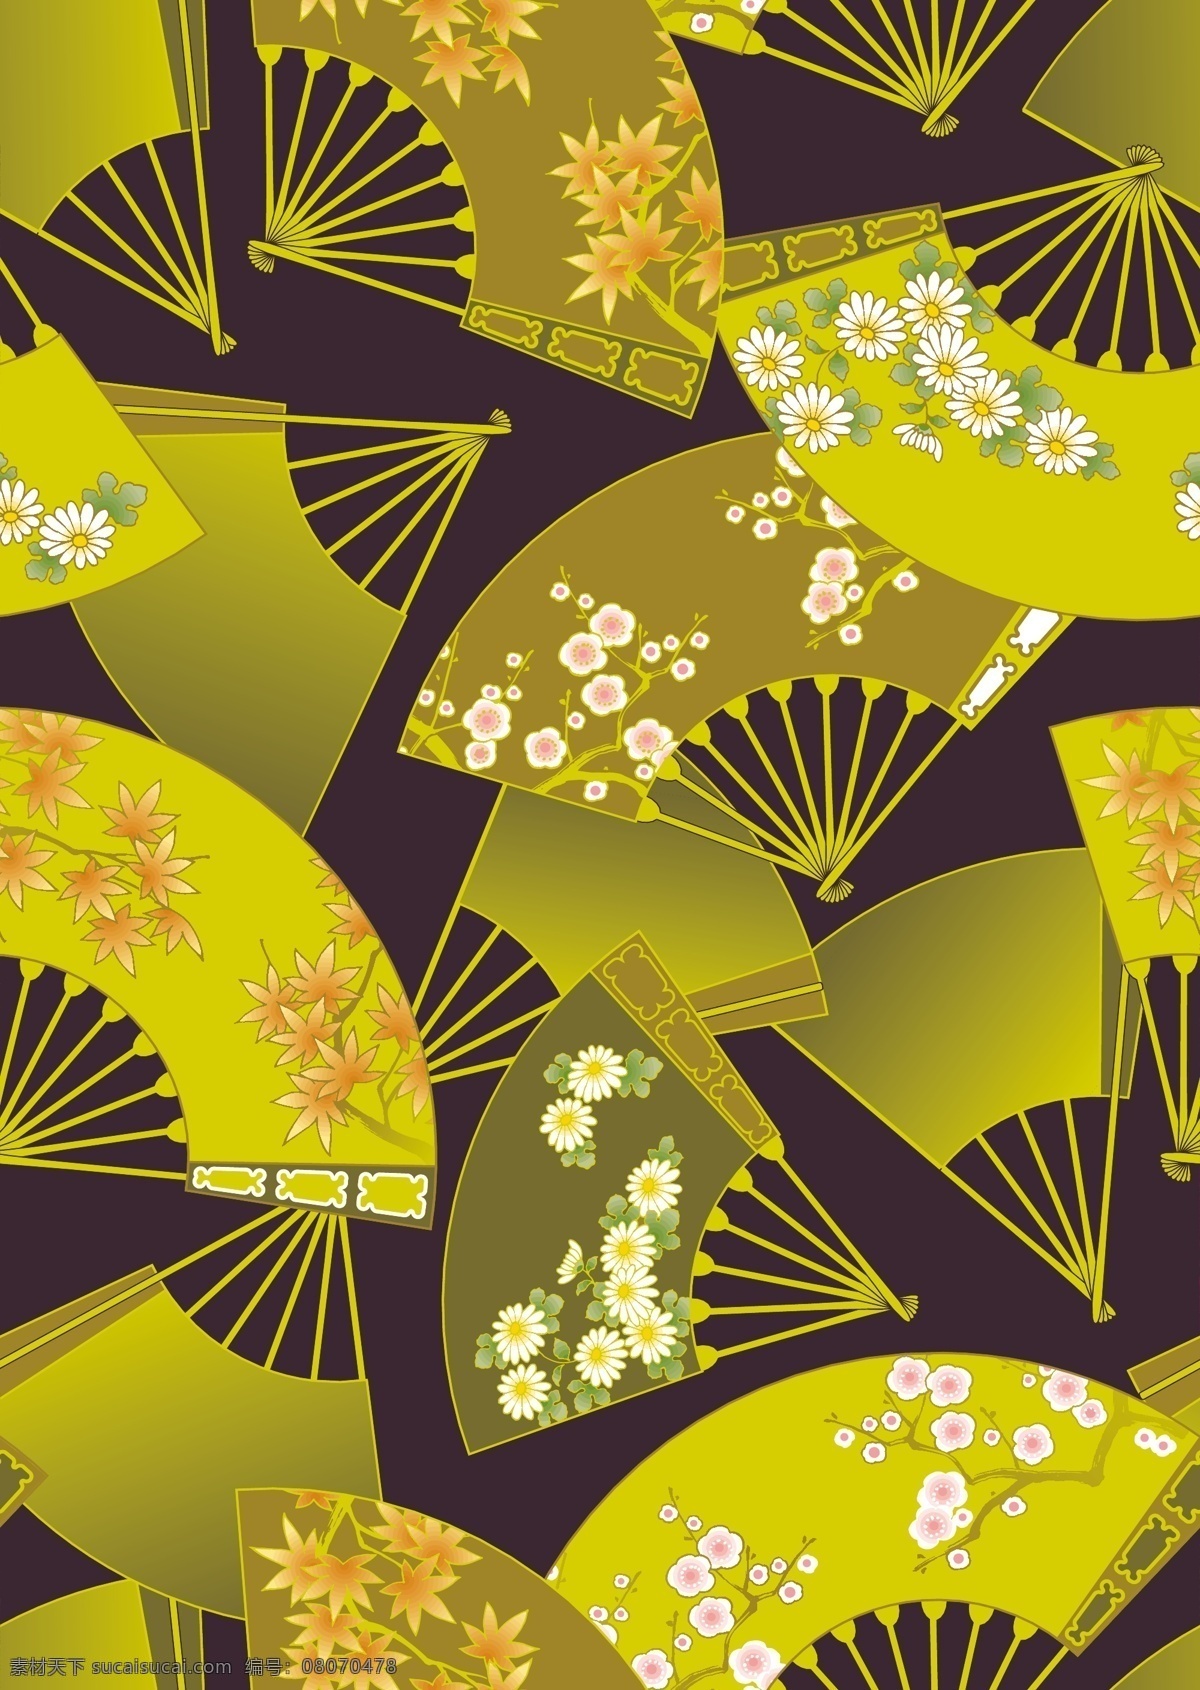 日式 传统 花样 扇子 底纹 背景 矢量图 枫叶 菊花 梅花 矢量 花纹 花边 边框 花纹花边